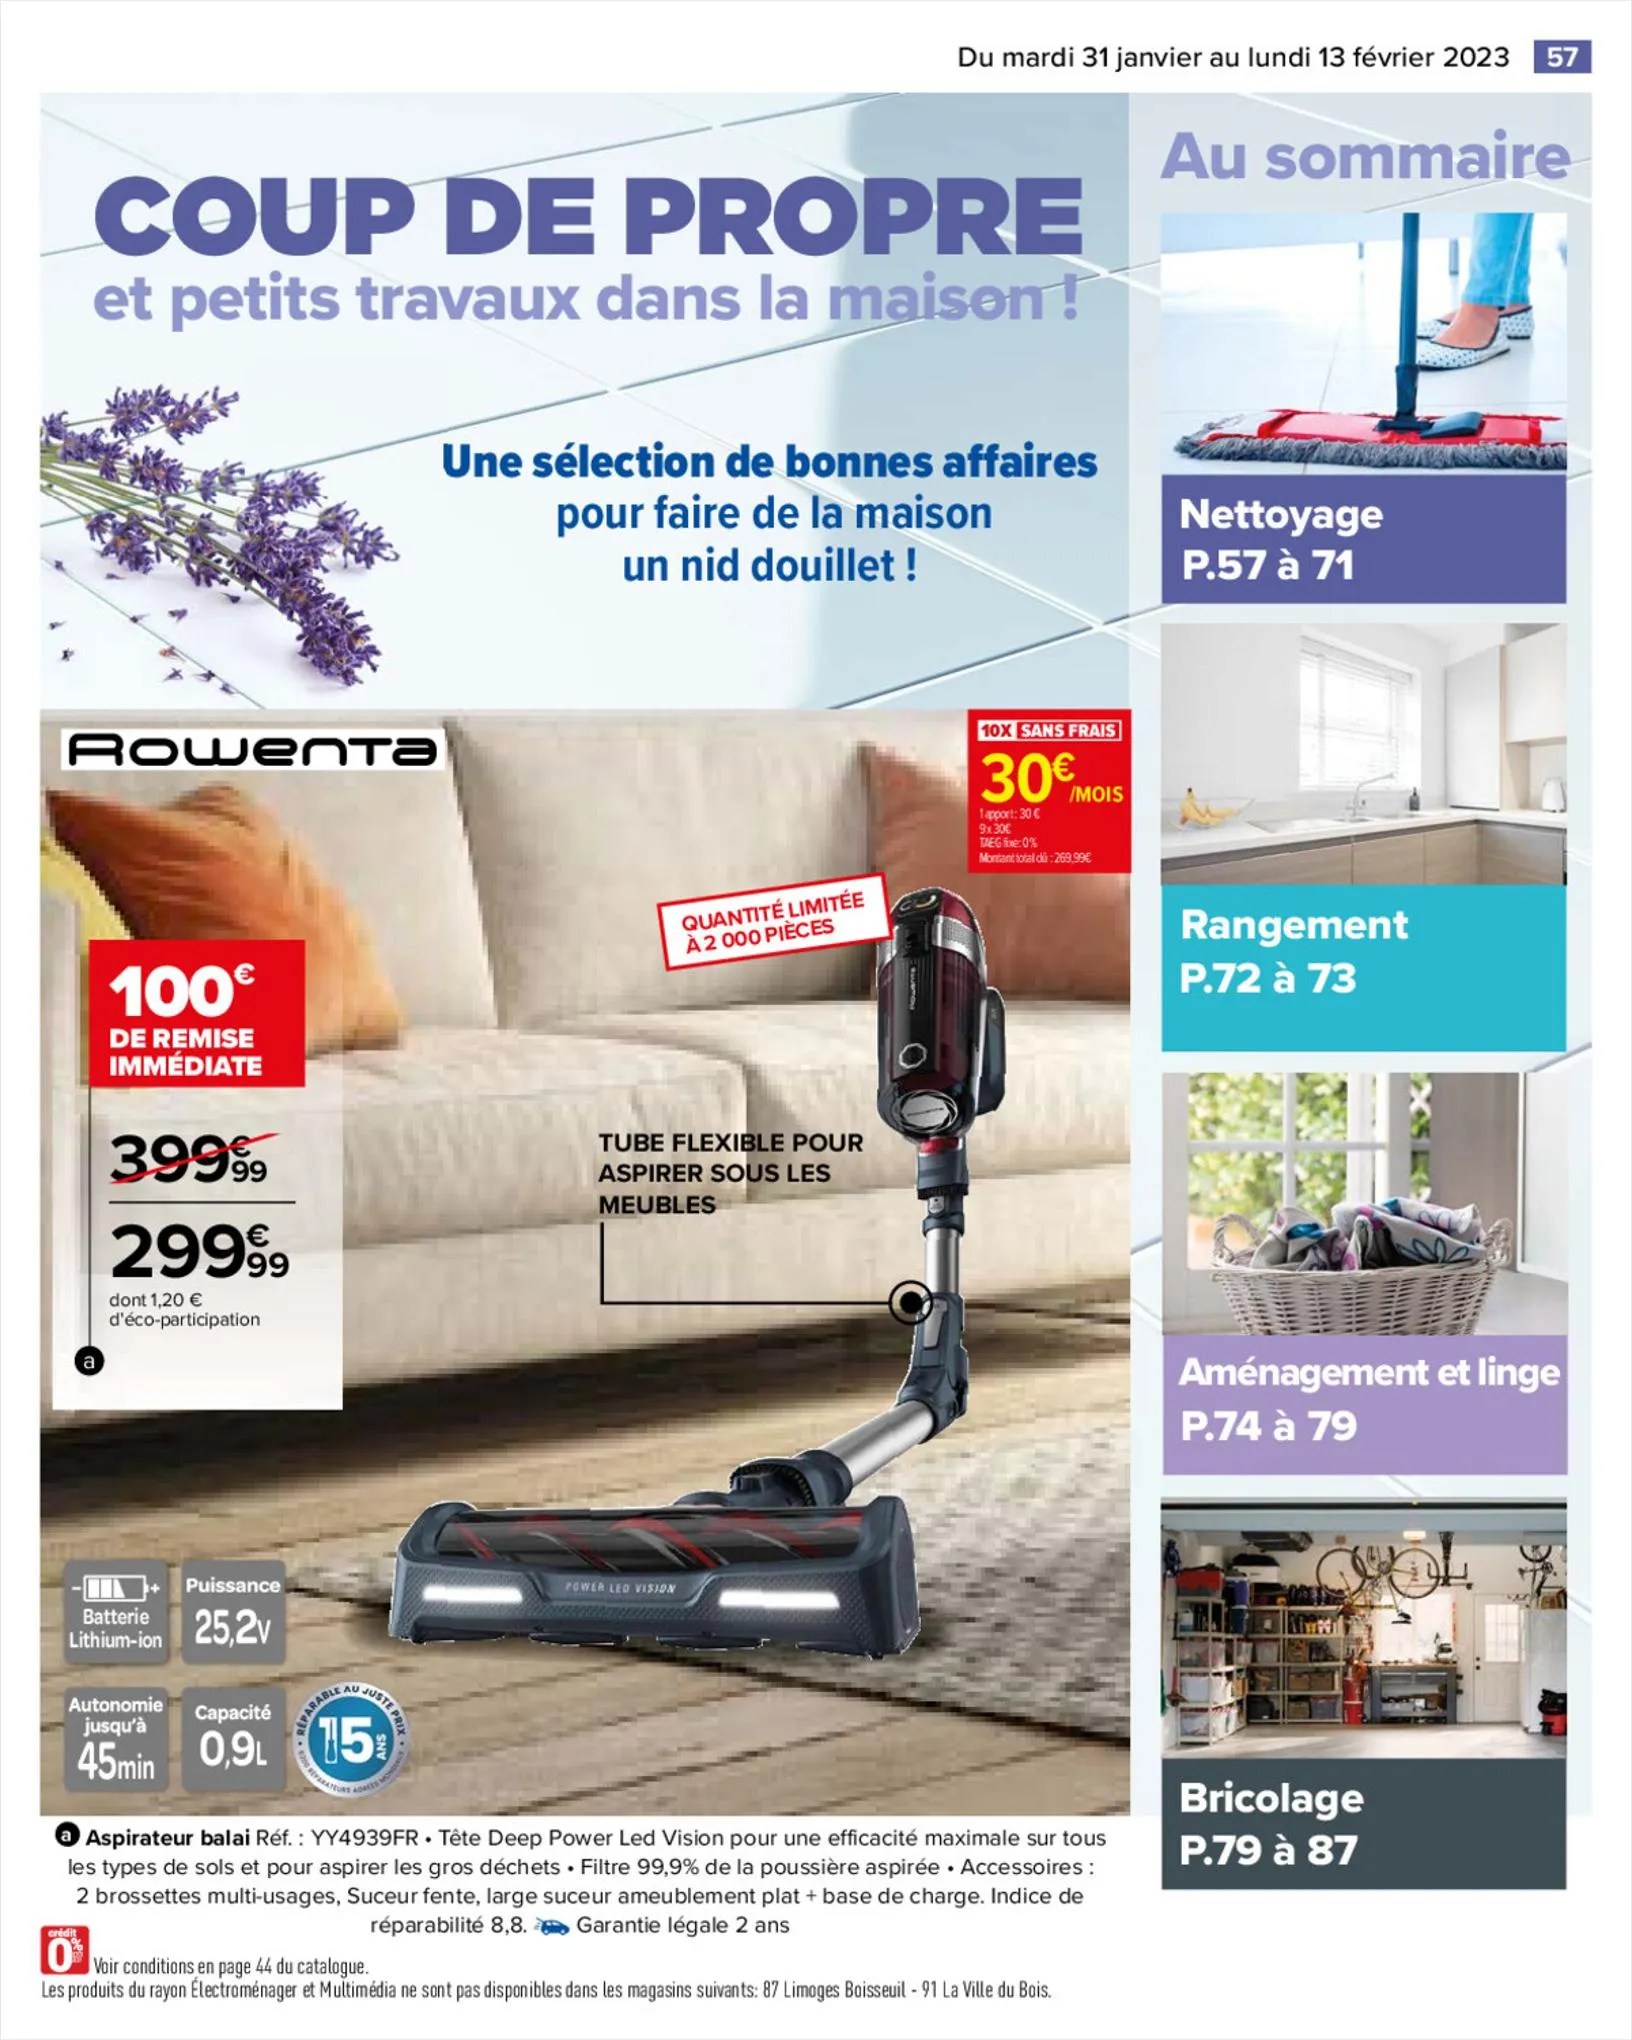 Catalogue COUP DE PROPRE dans la maison !, page 00063